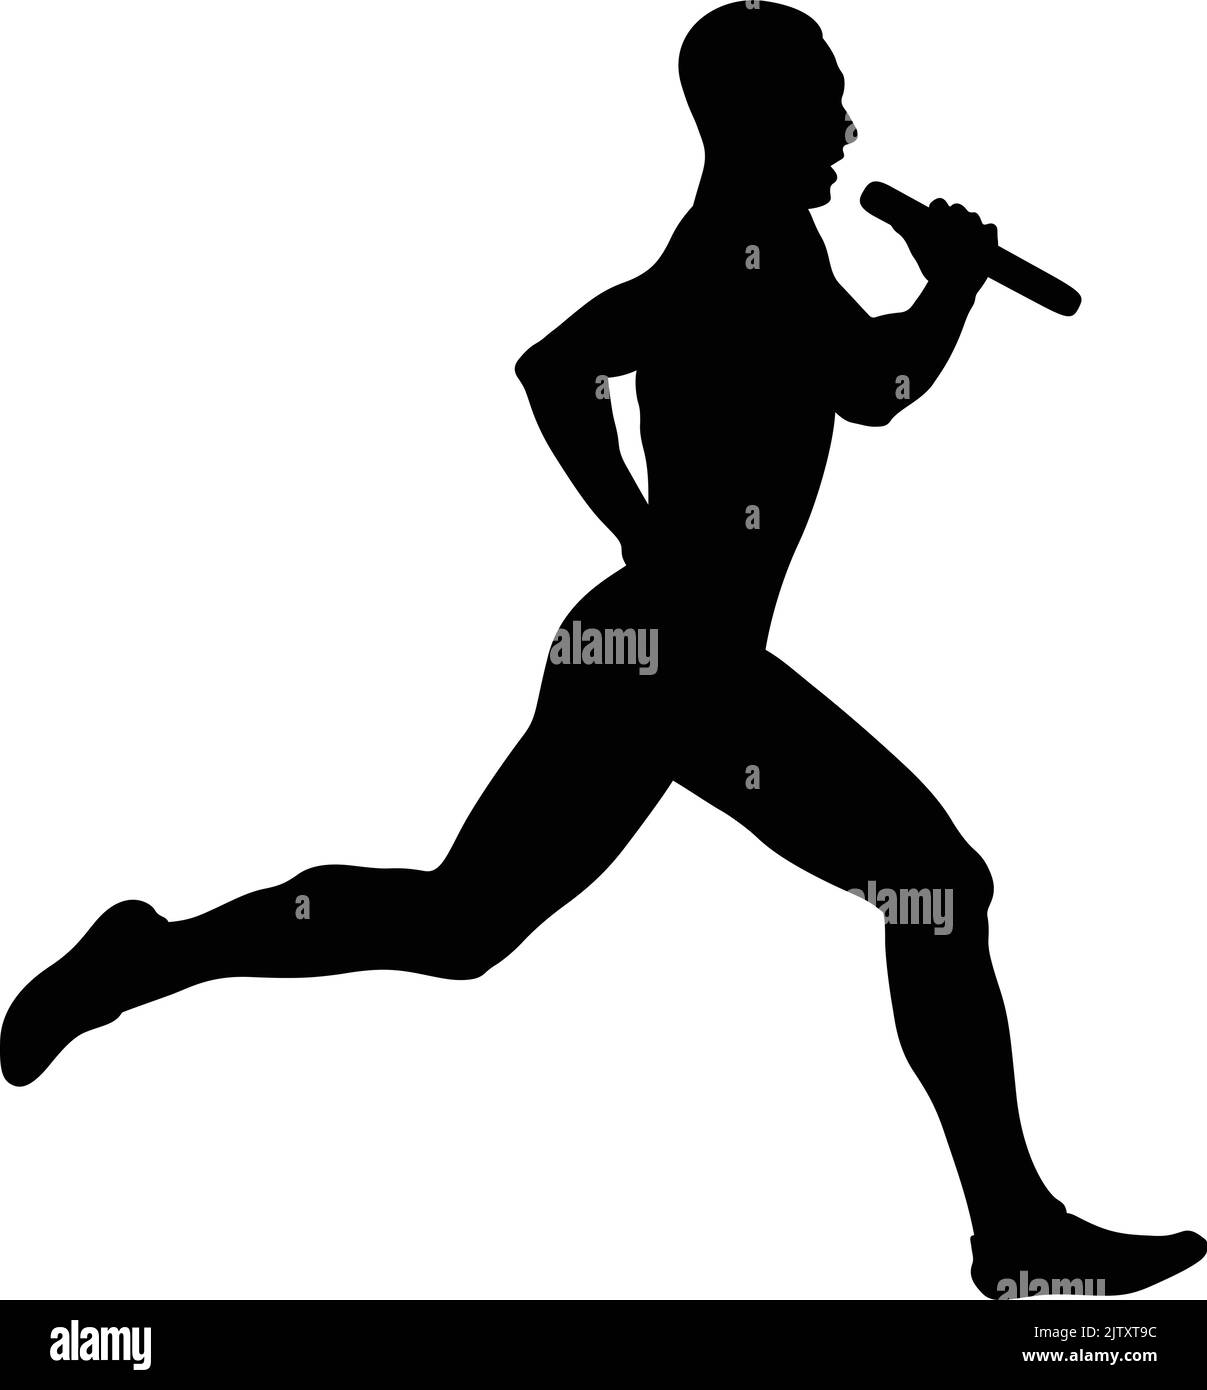 Männlicher Läufer mit Staffellauf Lauf Rennen schwarz Silhouette Stock Vektor